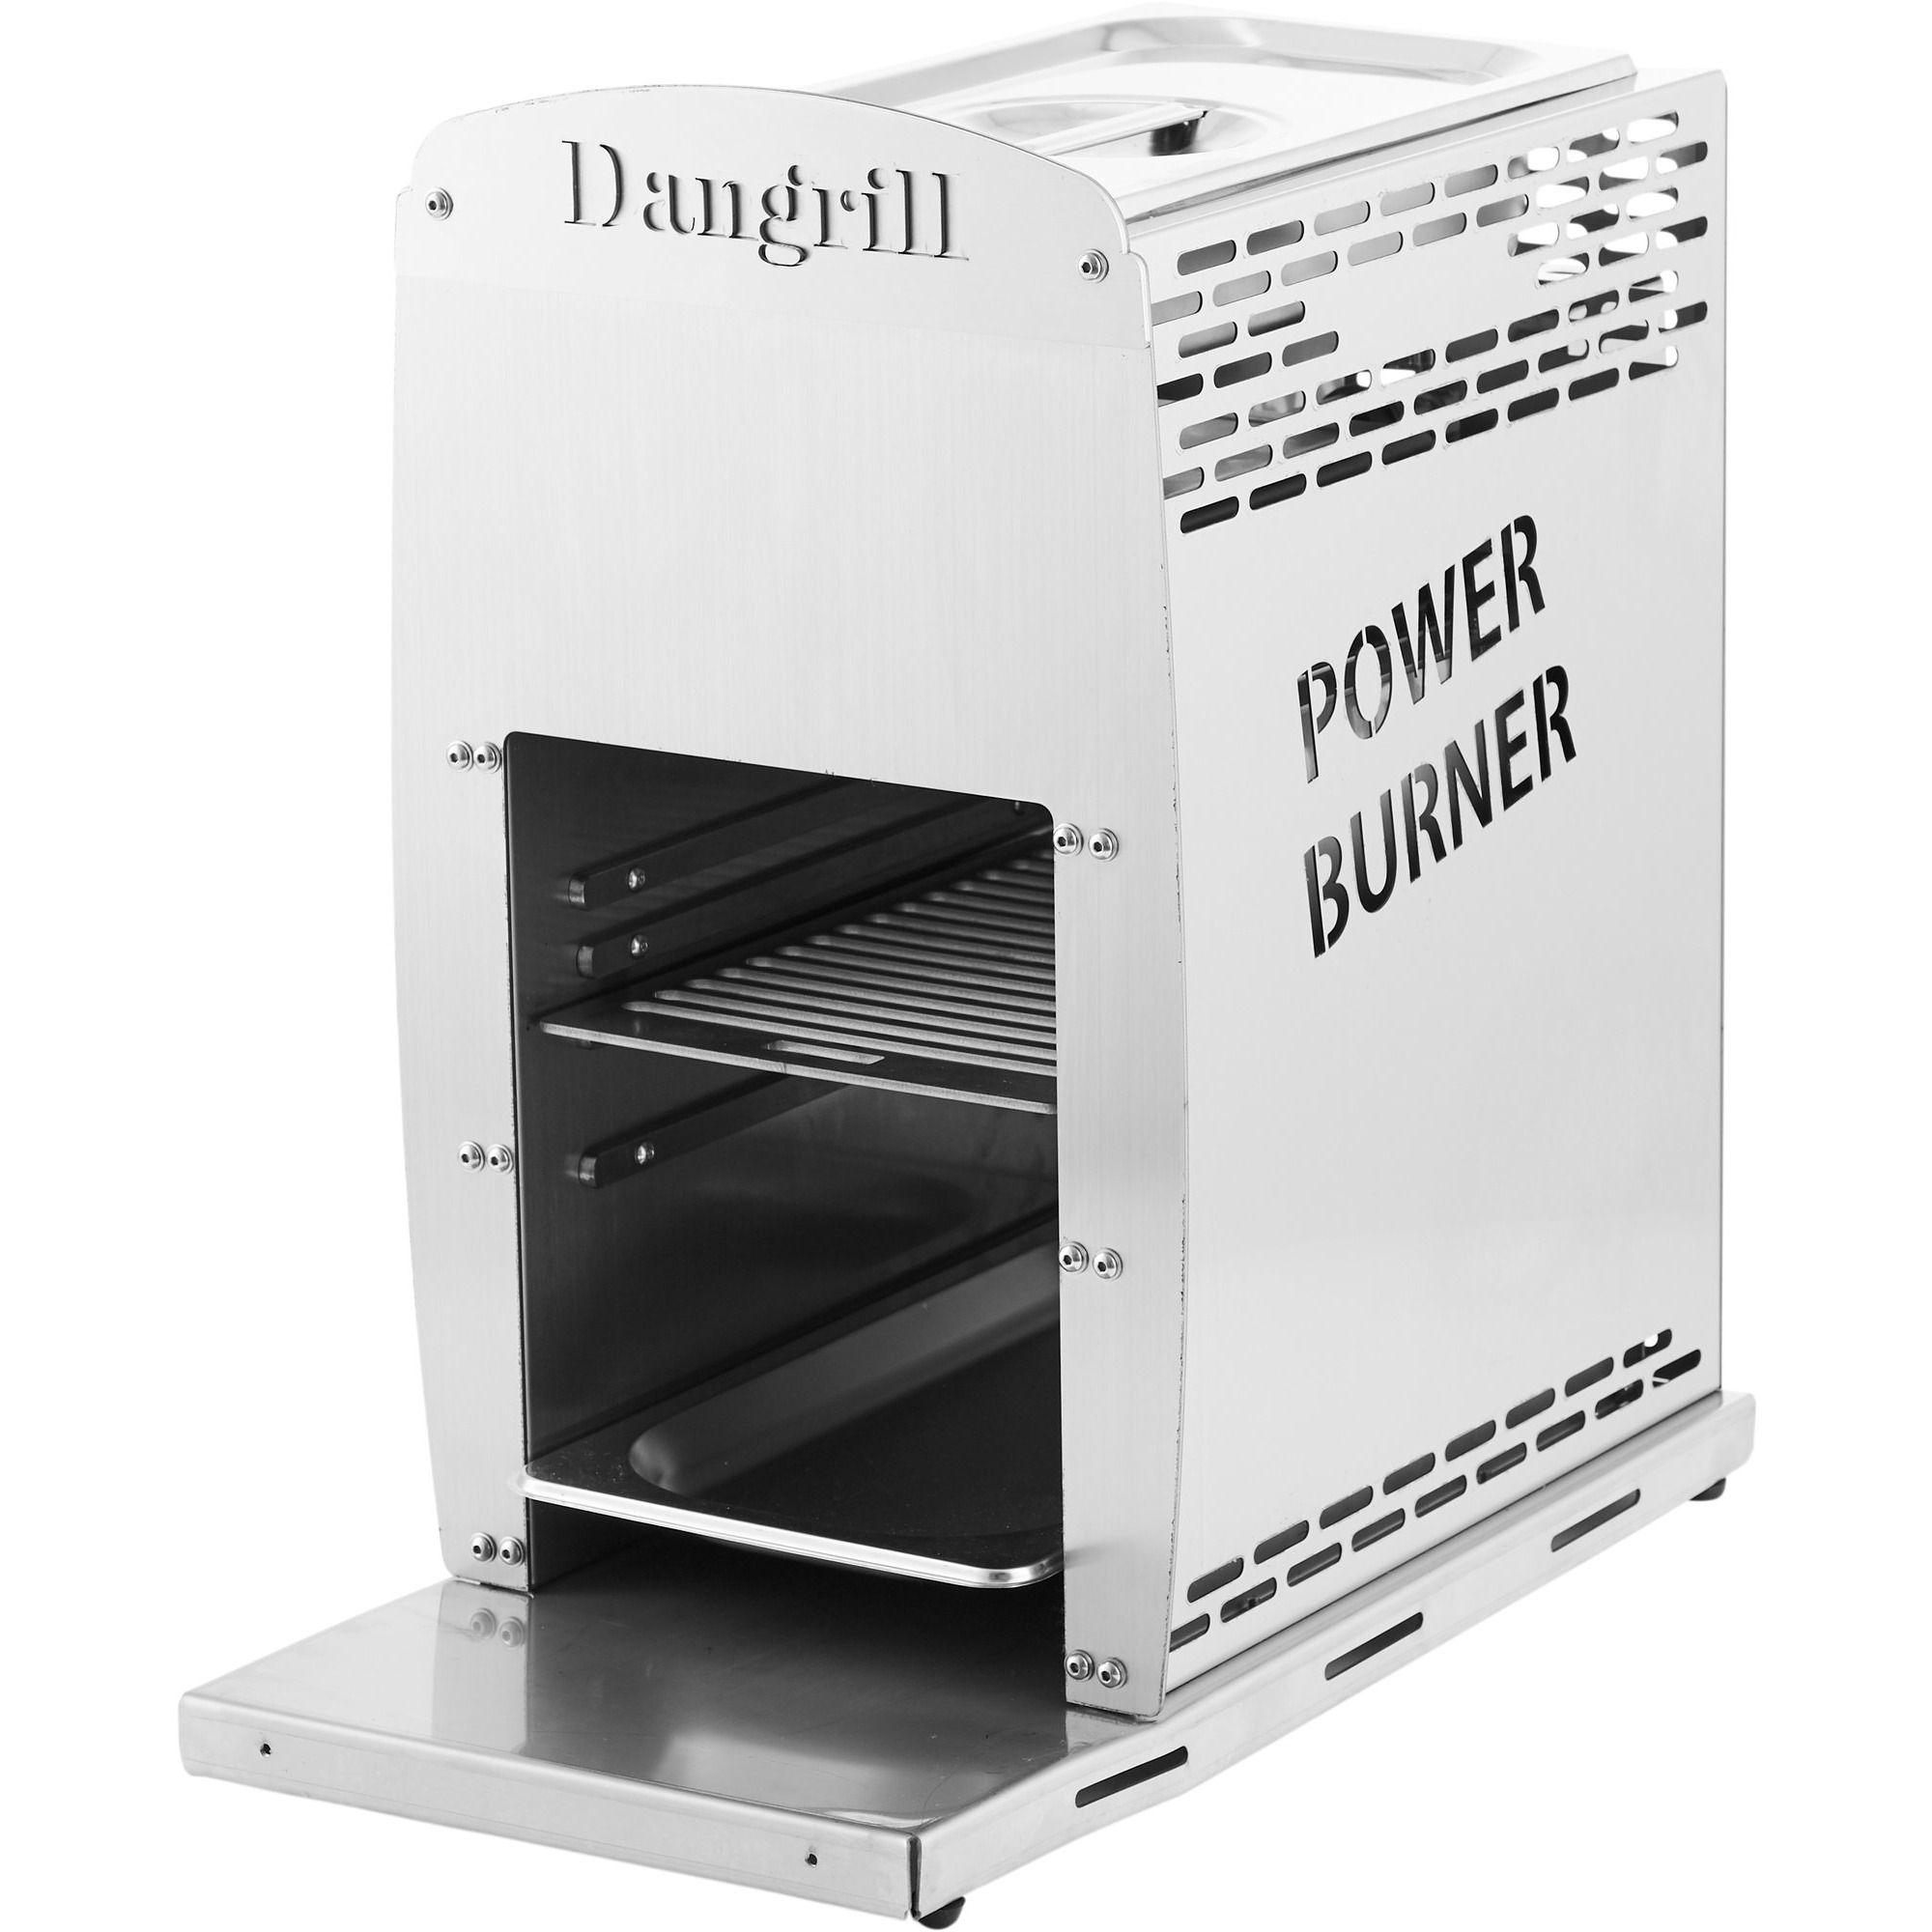 Dangrill Gasgrill power burner single